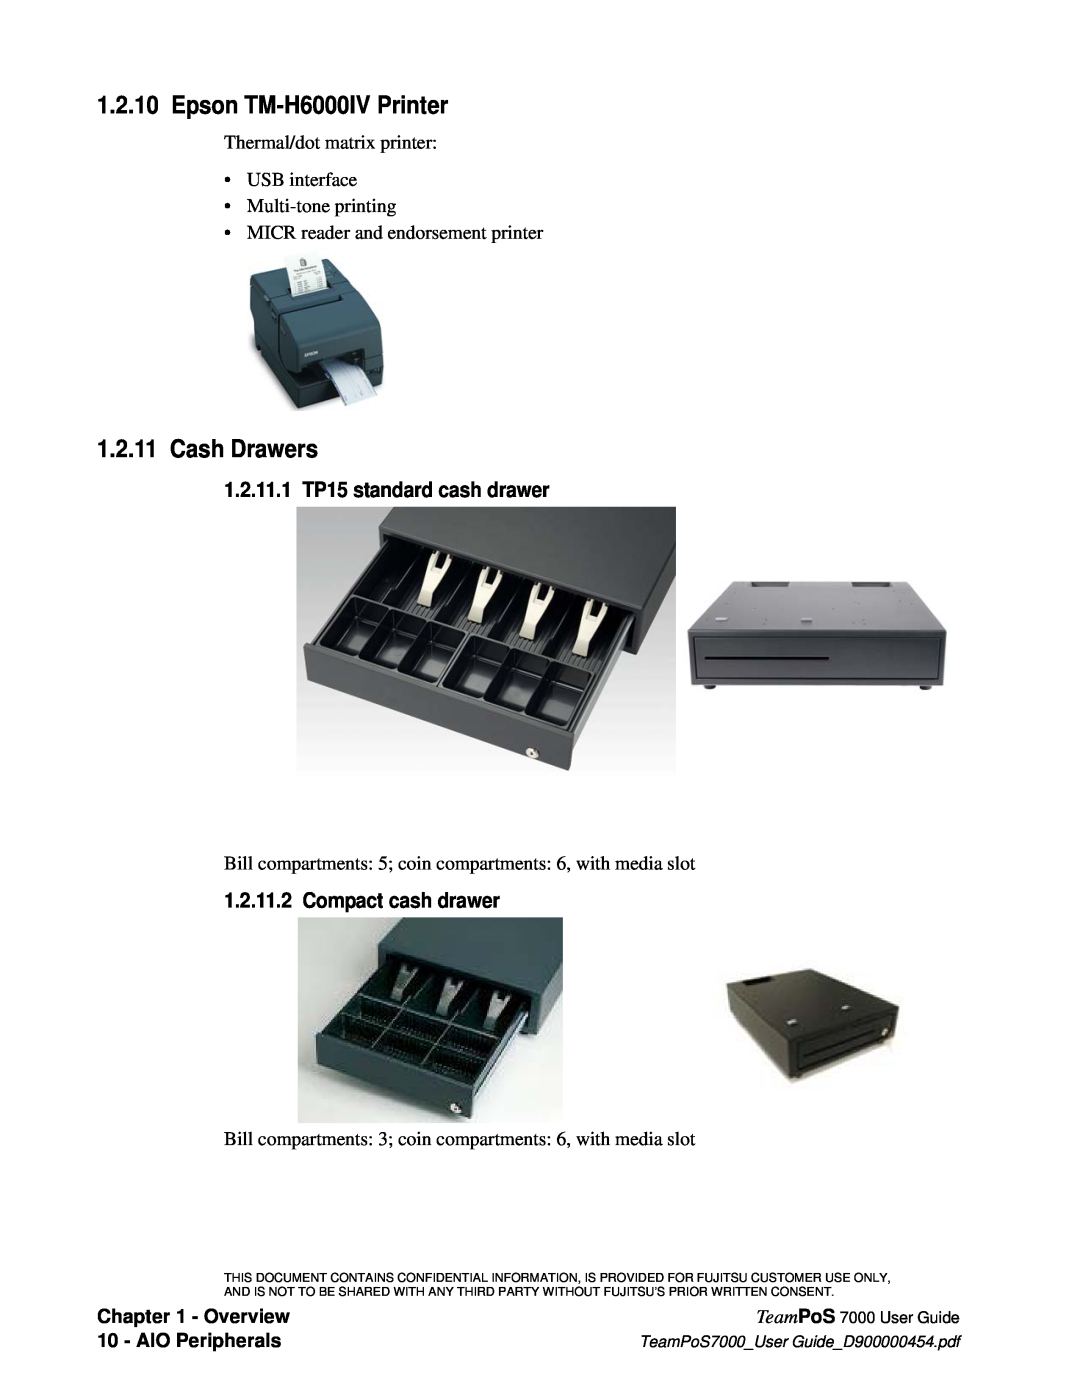 Fujitsu 7000 Epson TM-H6000IV Printer, Cash Drawers, 1.2.11.1 TP15 standard cash drawer, Compact cash drawer, Overview 